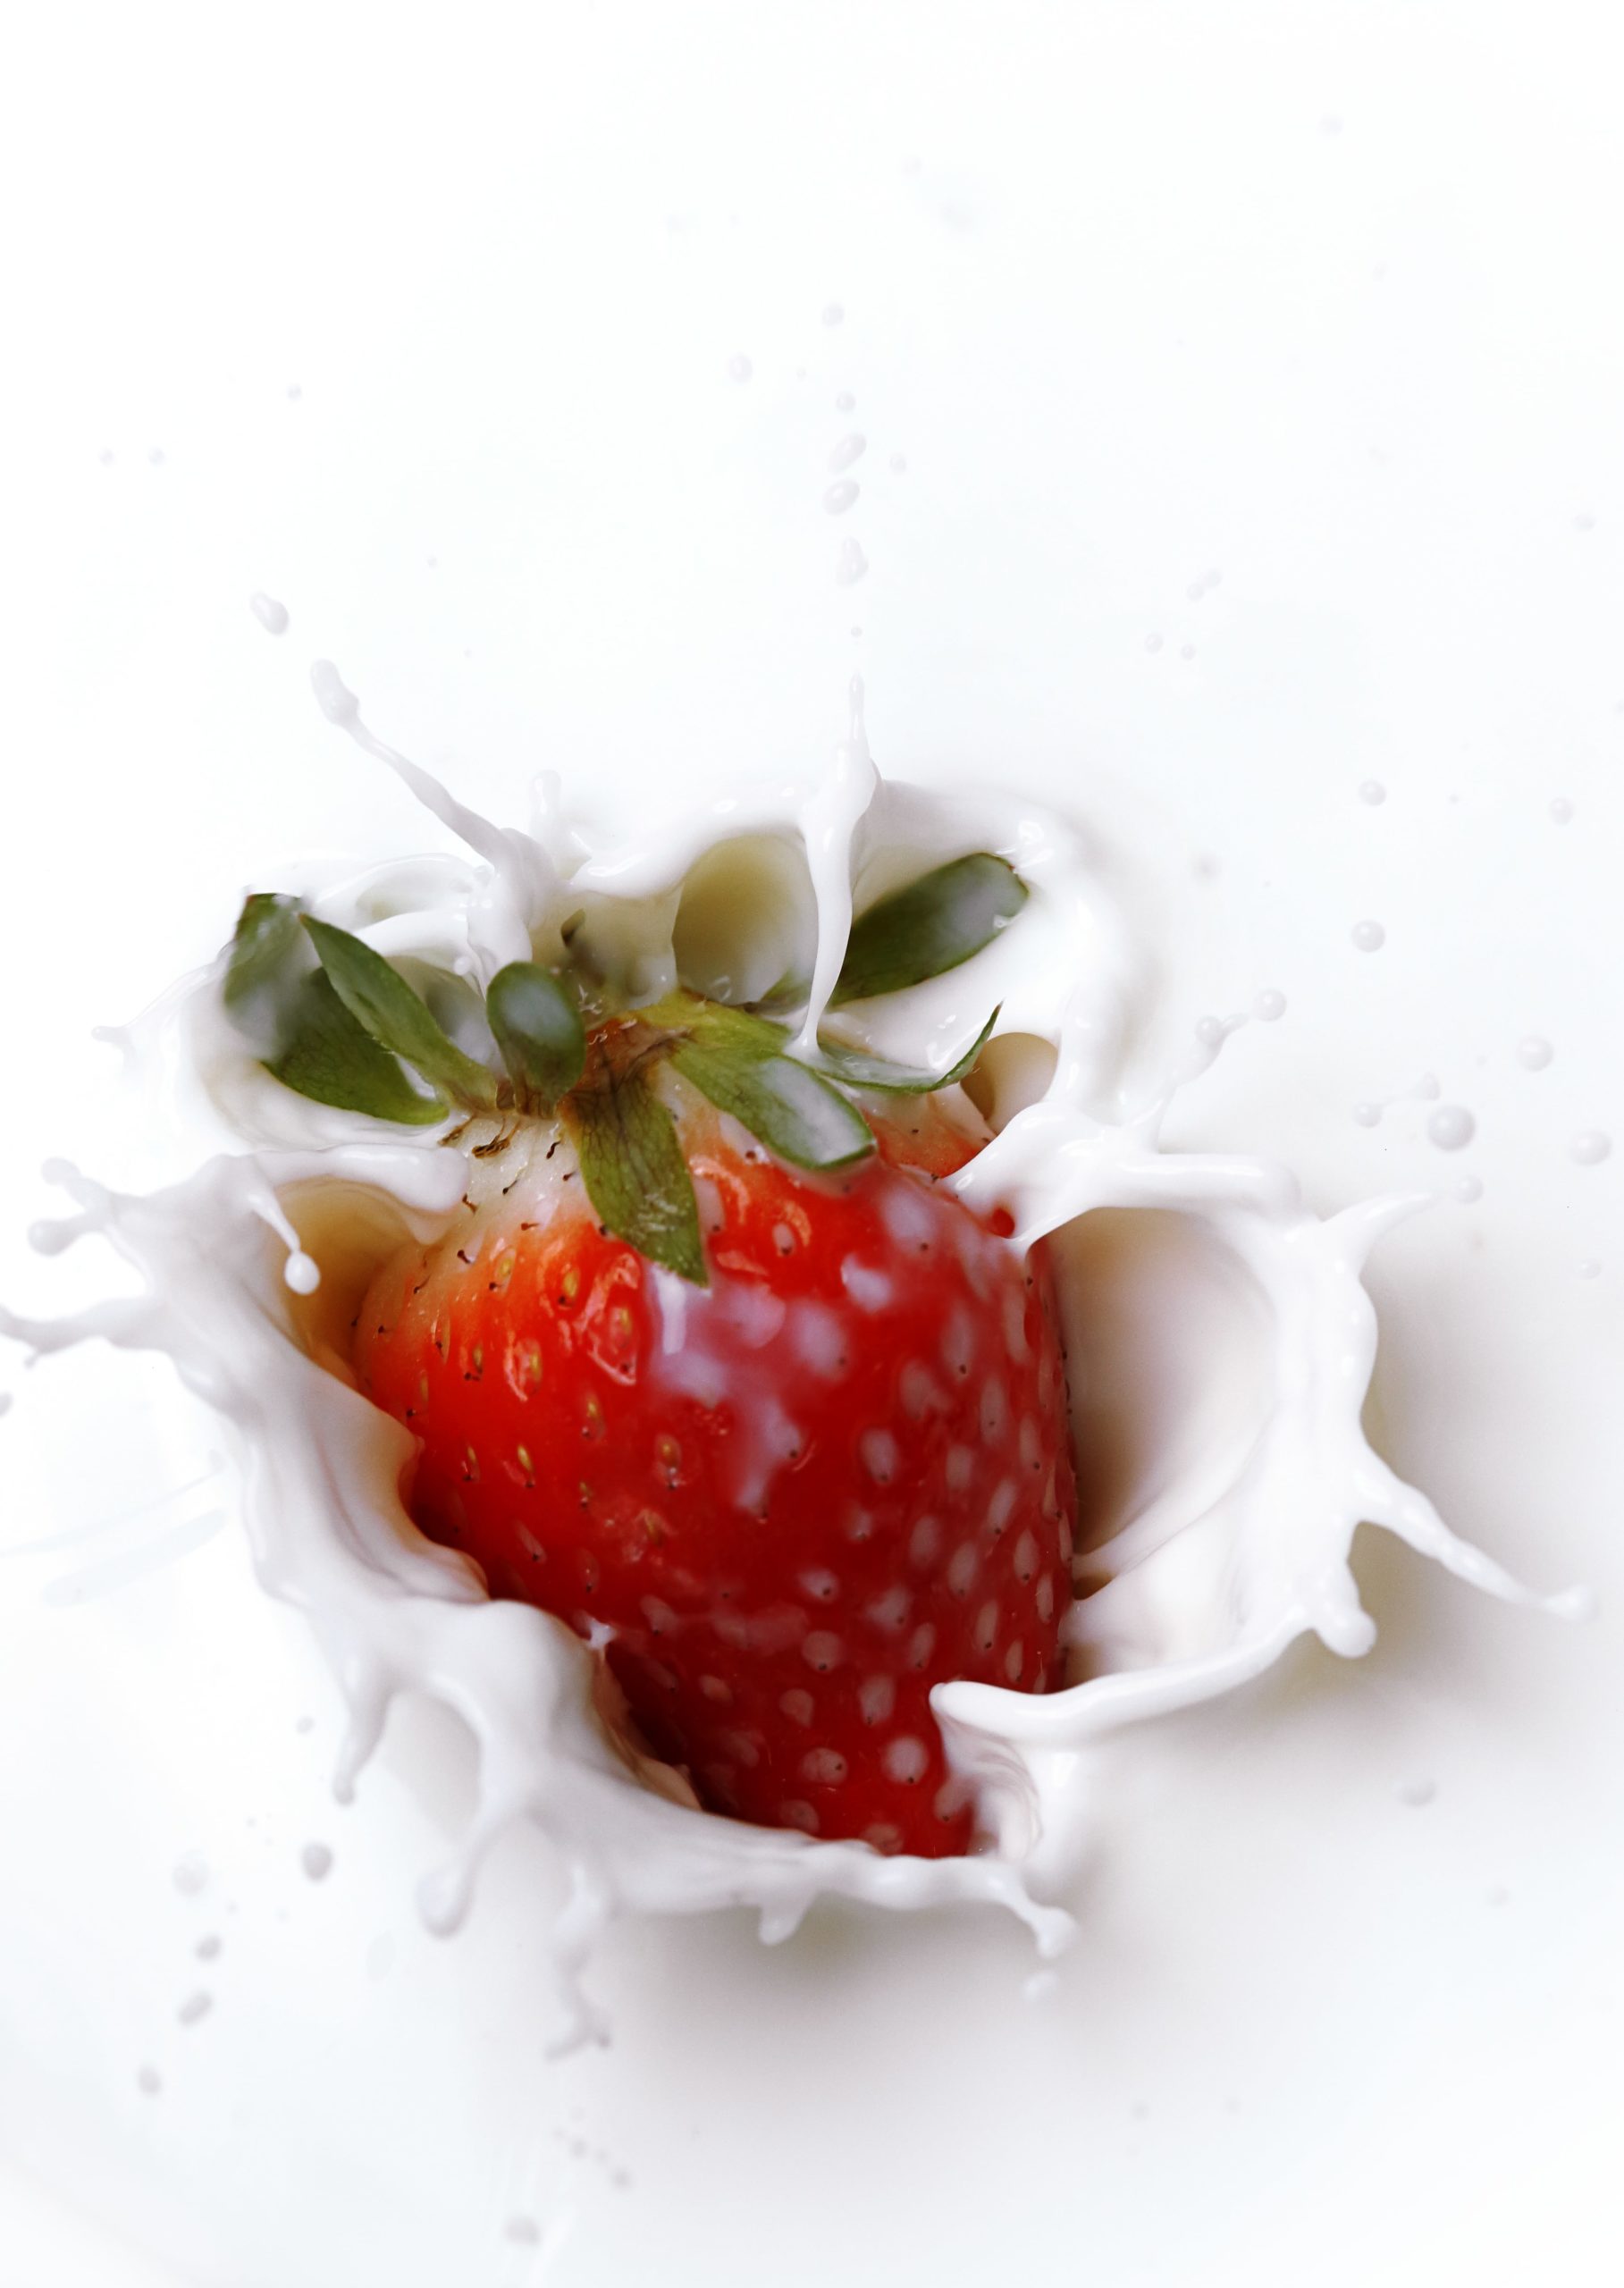 Strawberry splashing in milk